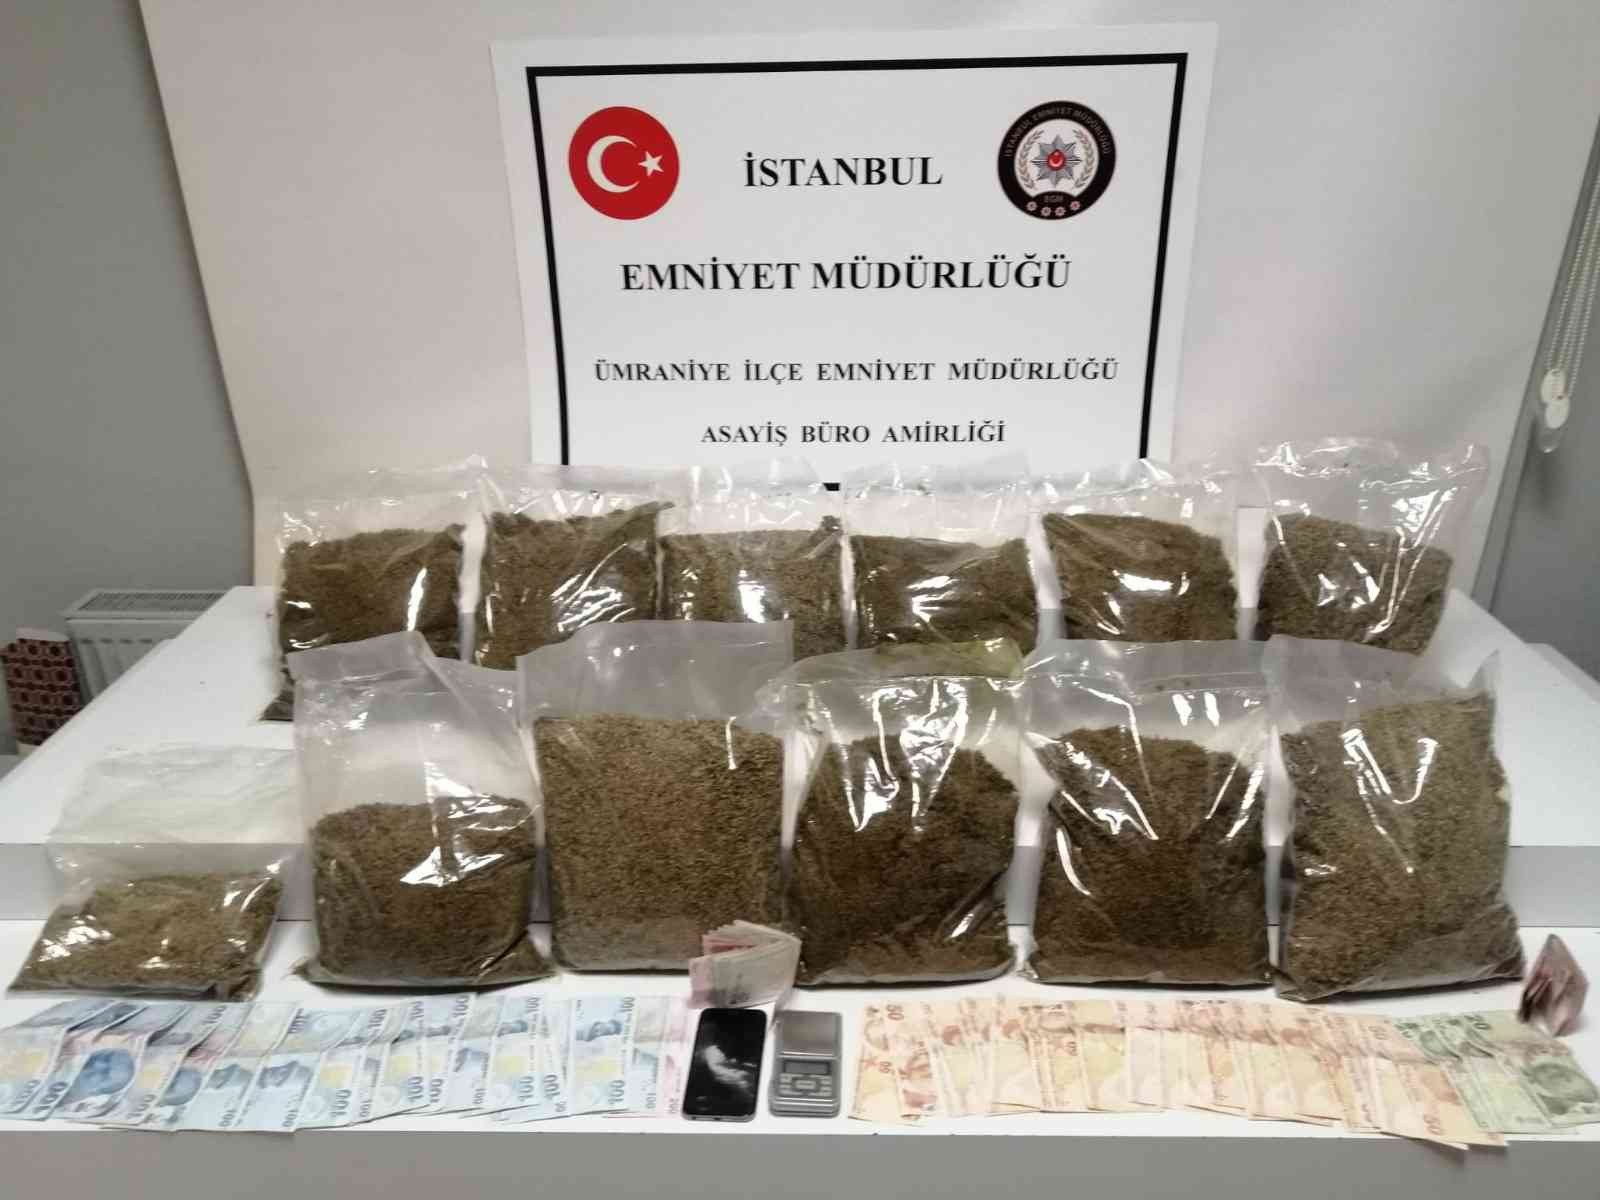 Ümraniye’de uyuşturucu operasyonu: 1 gözaltı #istanbul